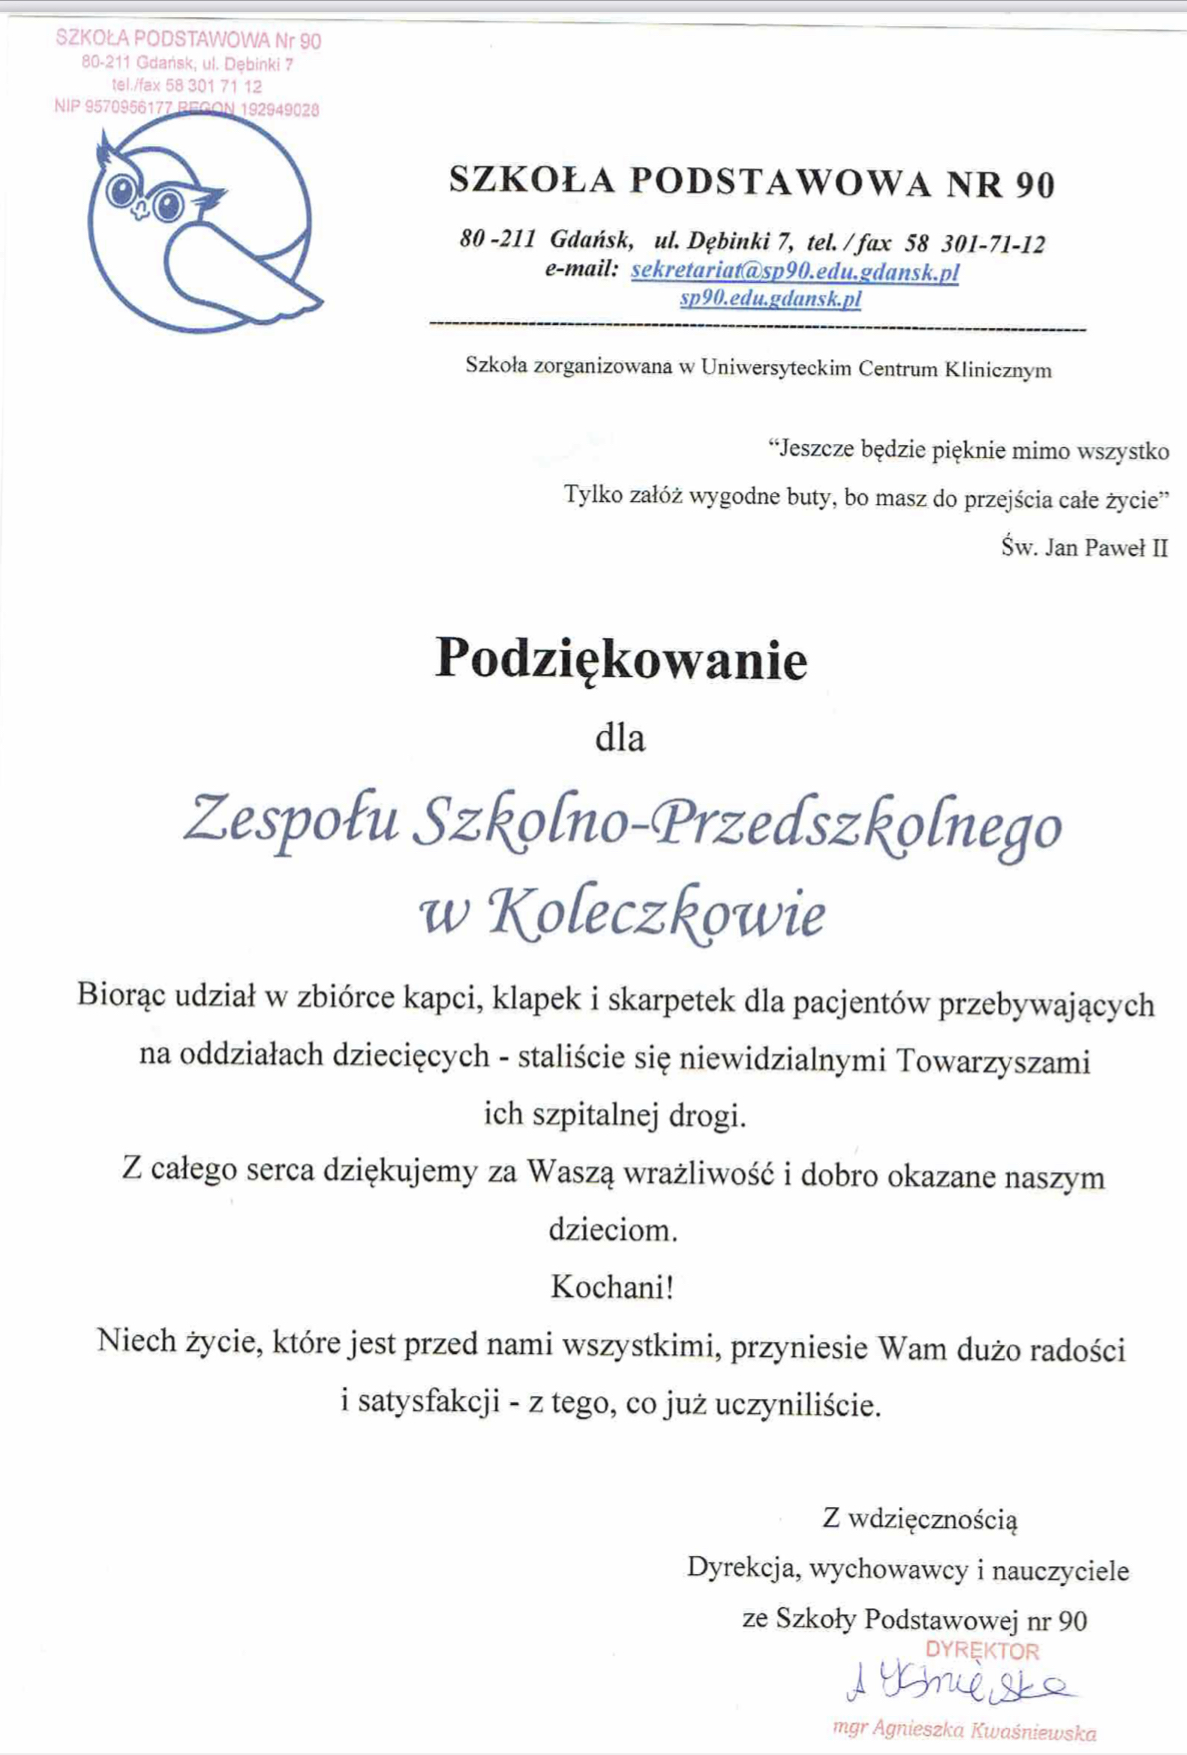 Read more about the article Podziękowania dla Zespołu Szkolno-Przedszkolnego w Koleczkowie